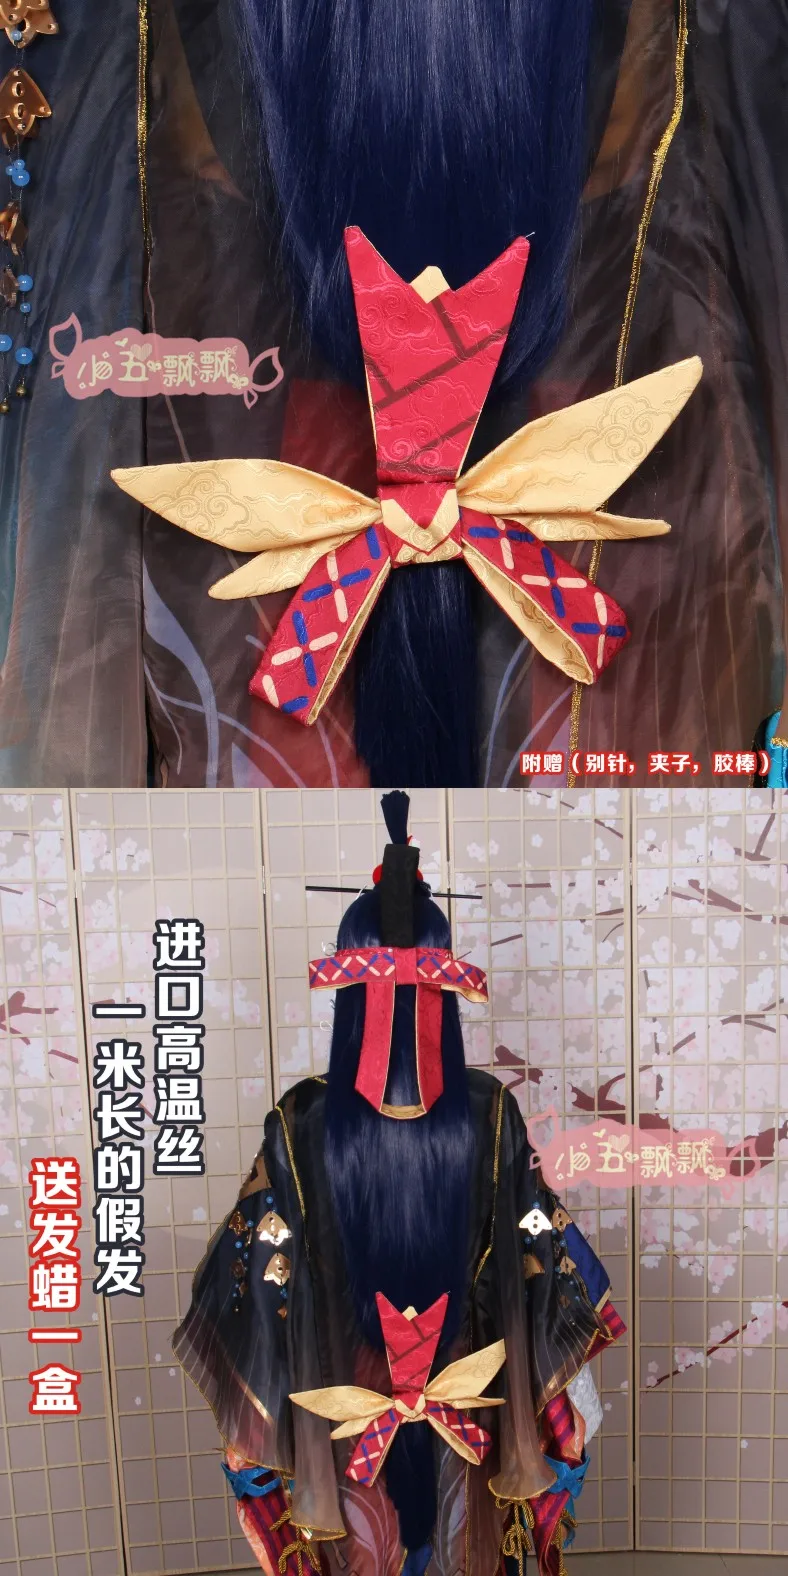 Аниме! Onmyoji Tamamo no Mae персонаж кожи великолепное кимоно платье униформа косплей костюм полный набор для унисекс